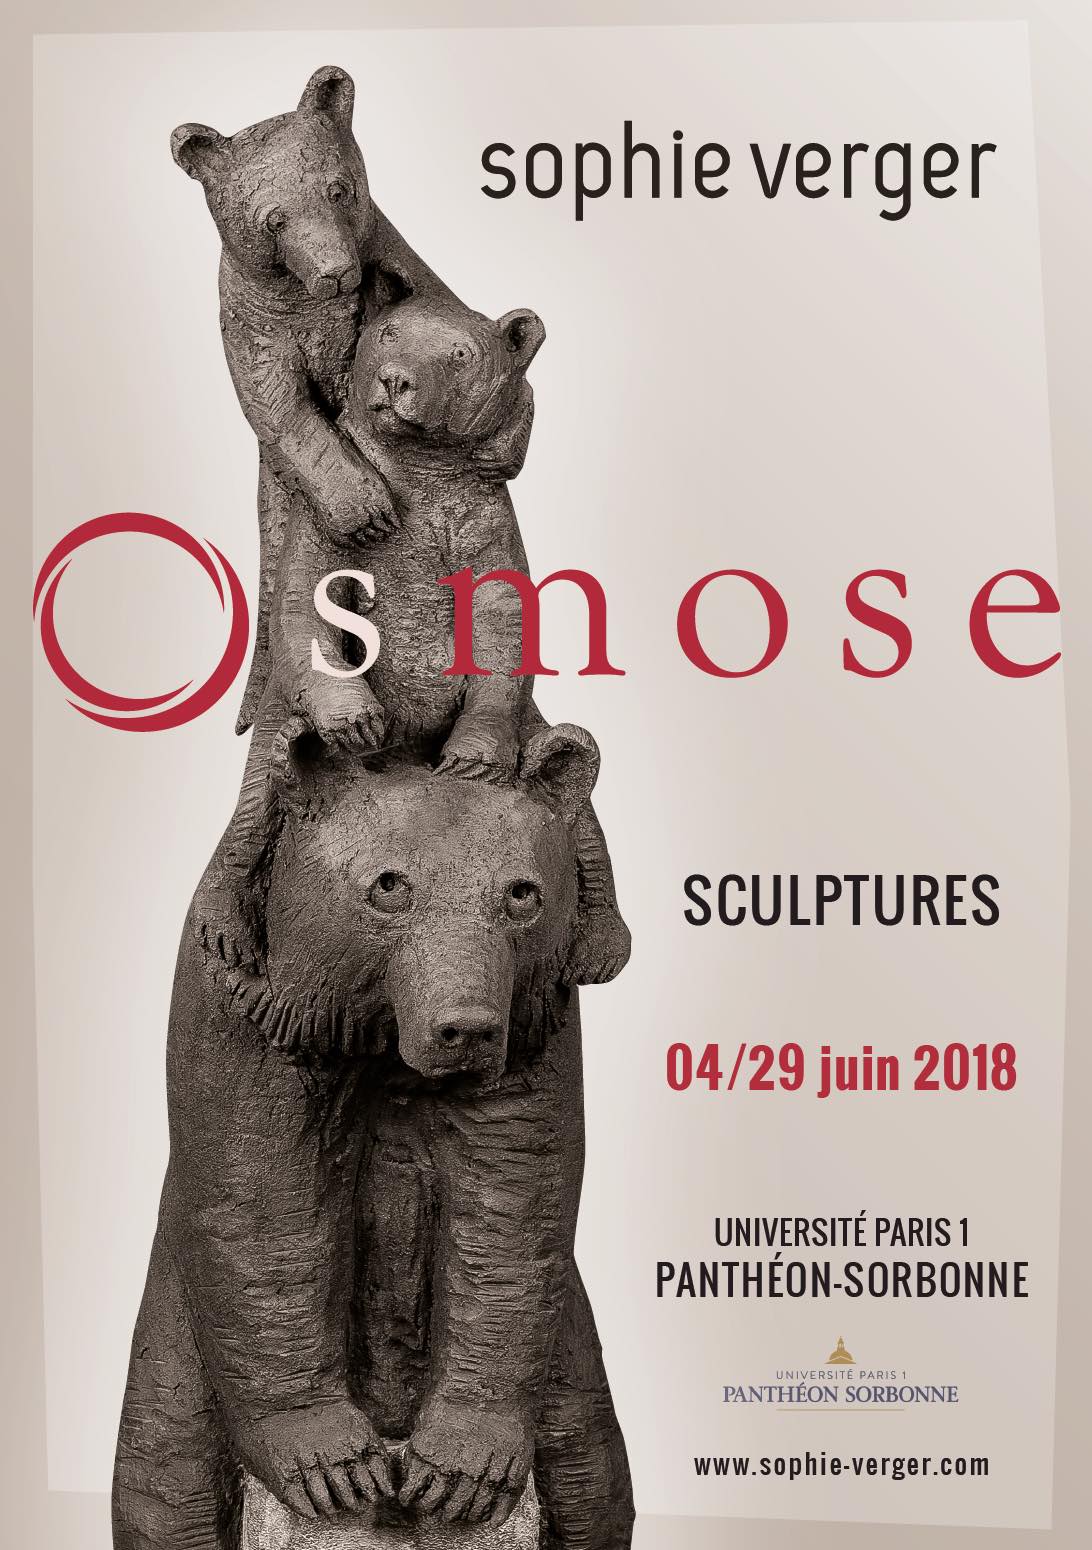 OSMOSE - Le bestiaire du sculpteur Sophie Verger s'installe à la Sorbonne